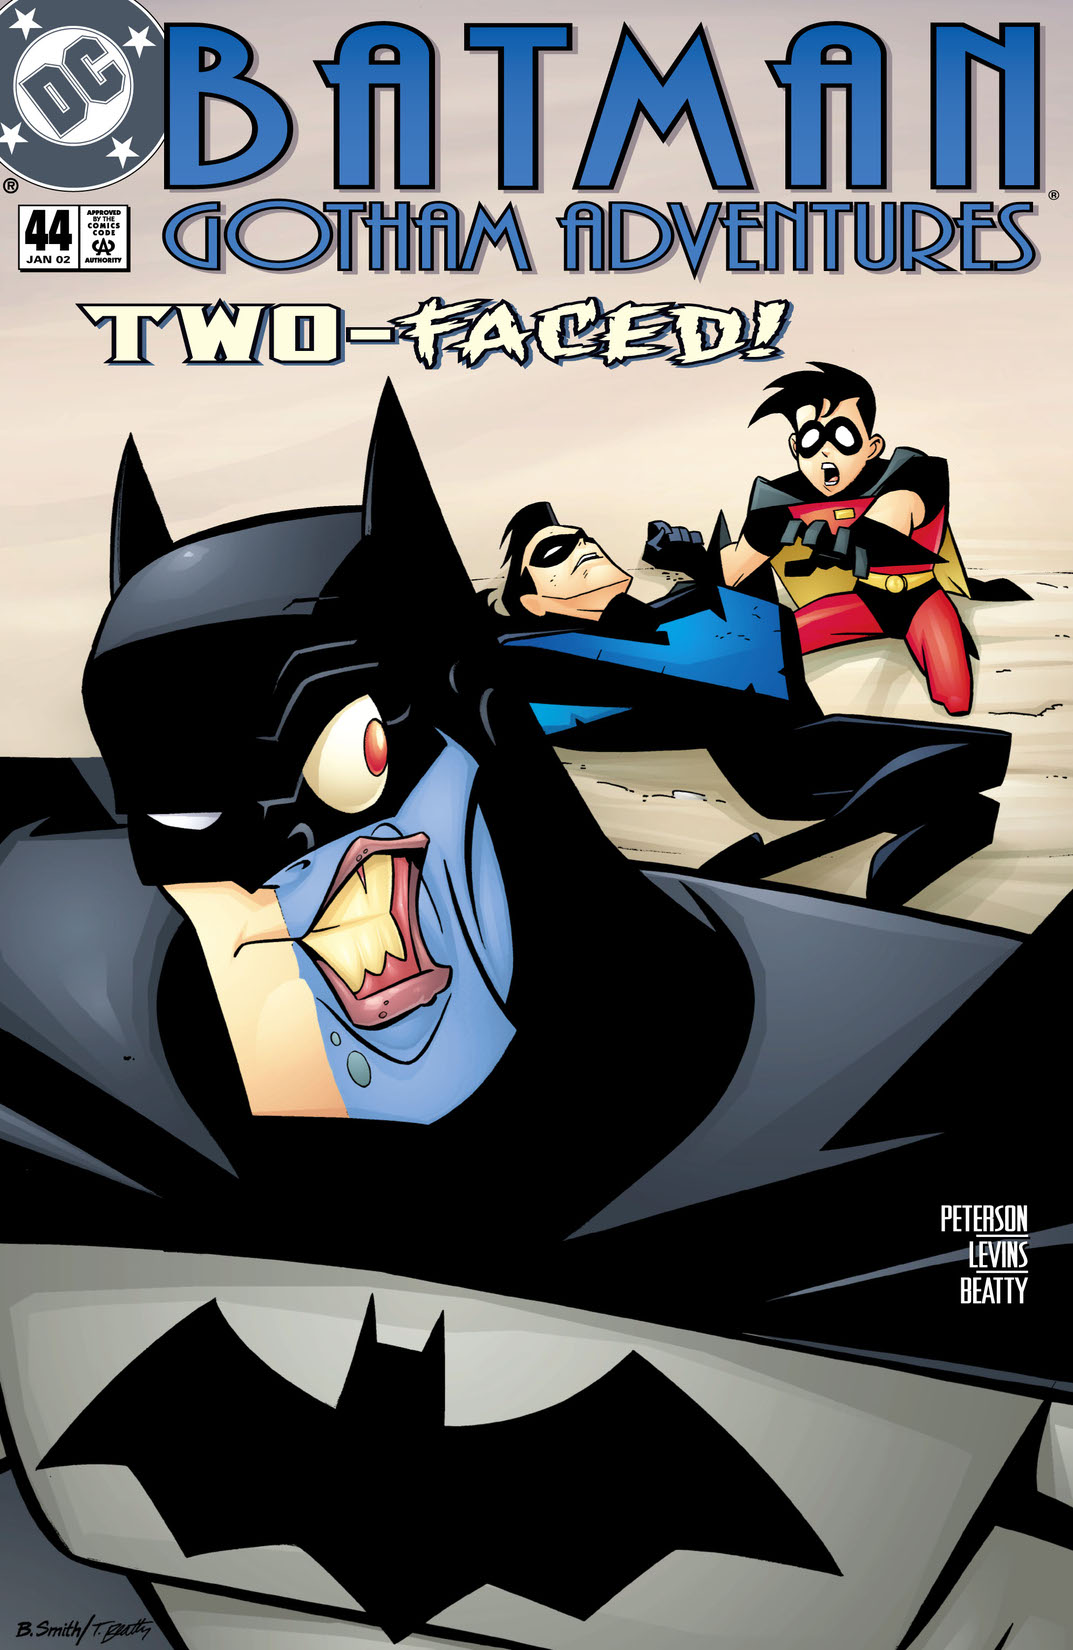 Batman: Gotham Adventures #44 preview images